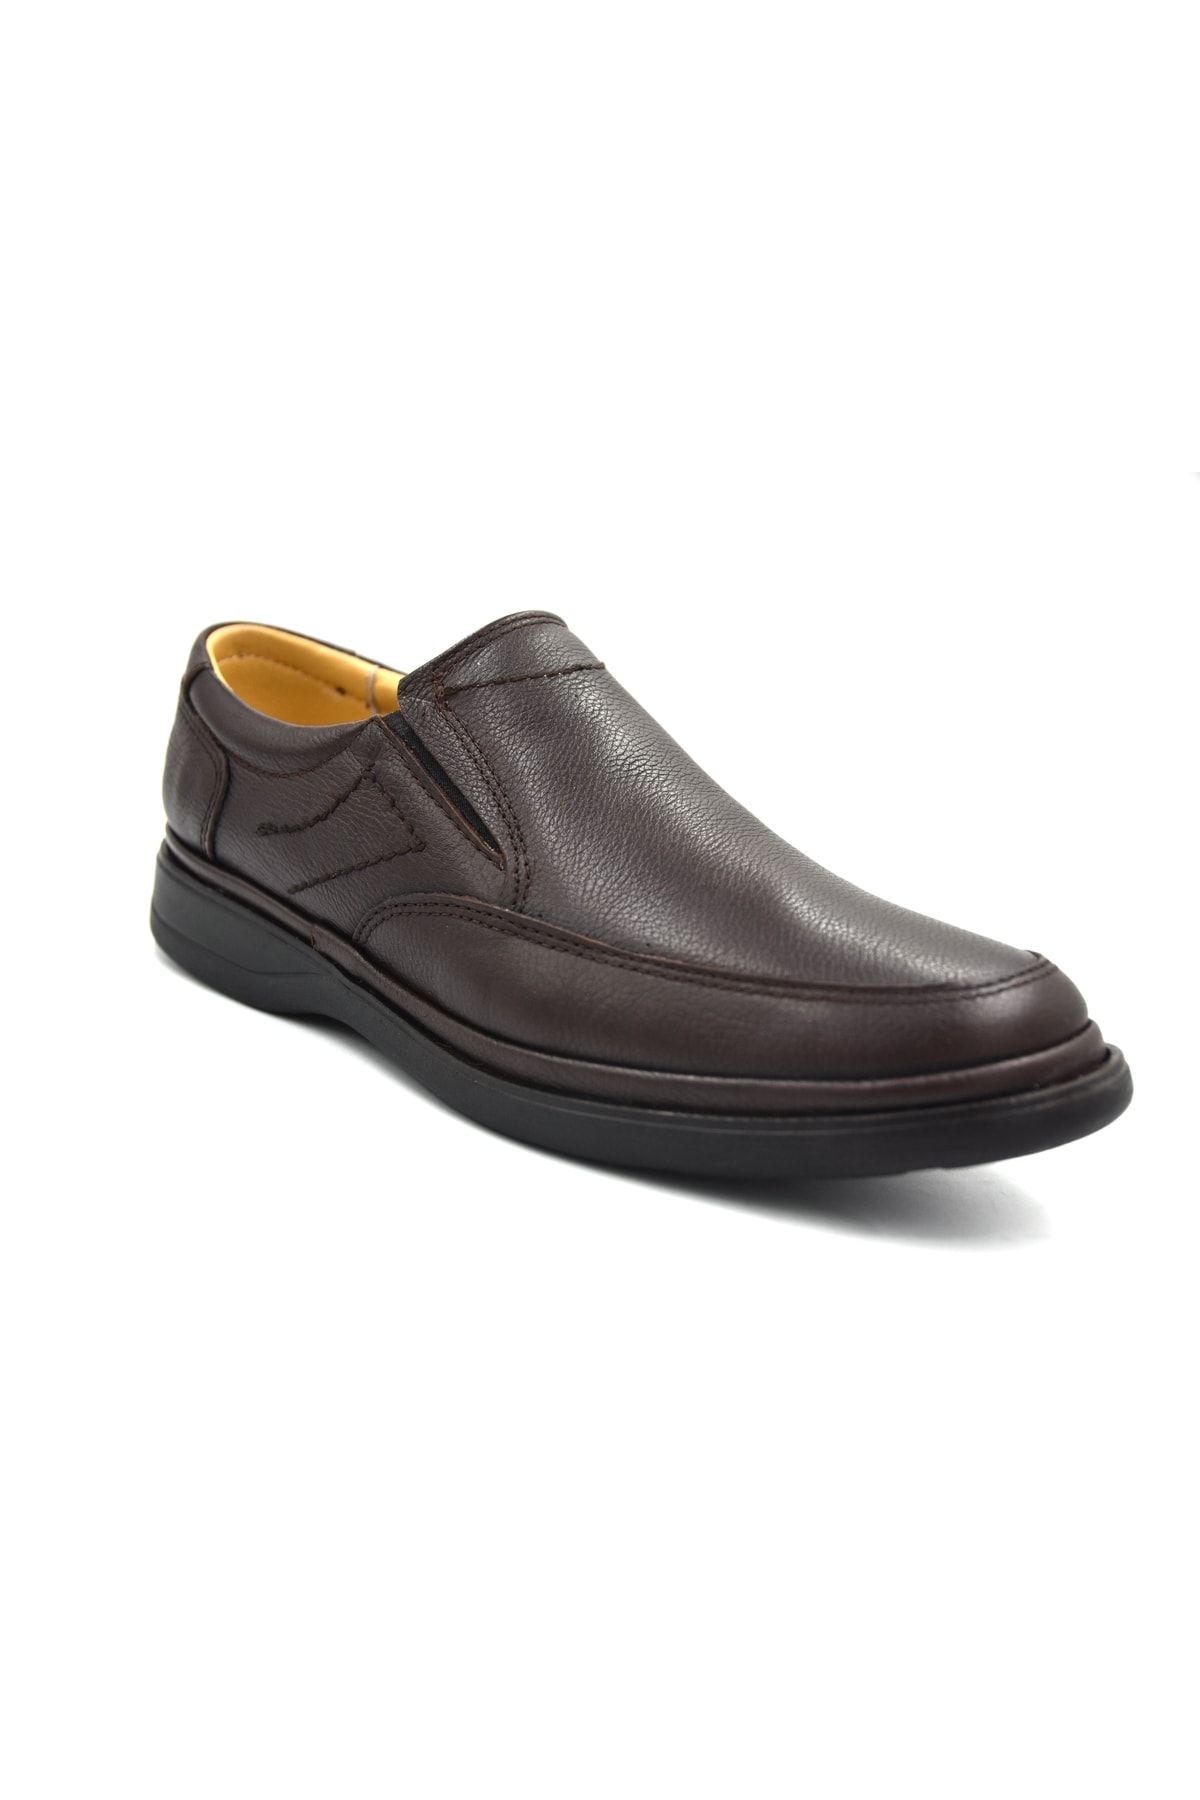 Prego Hakiki Deri Poli Taban Topuk Dikeni Destekli Bağcıklı Erkek Günlük Confort Ayakkabı